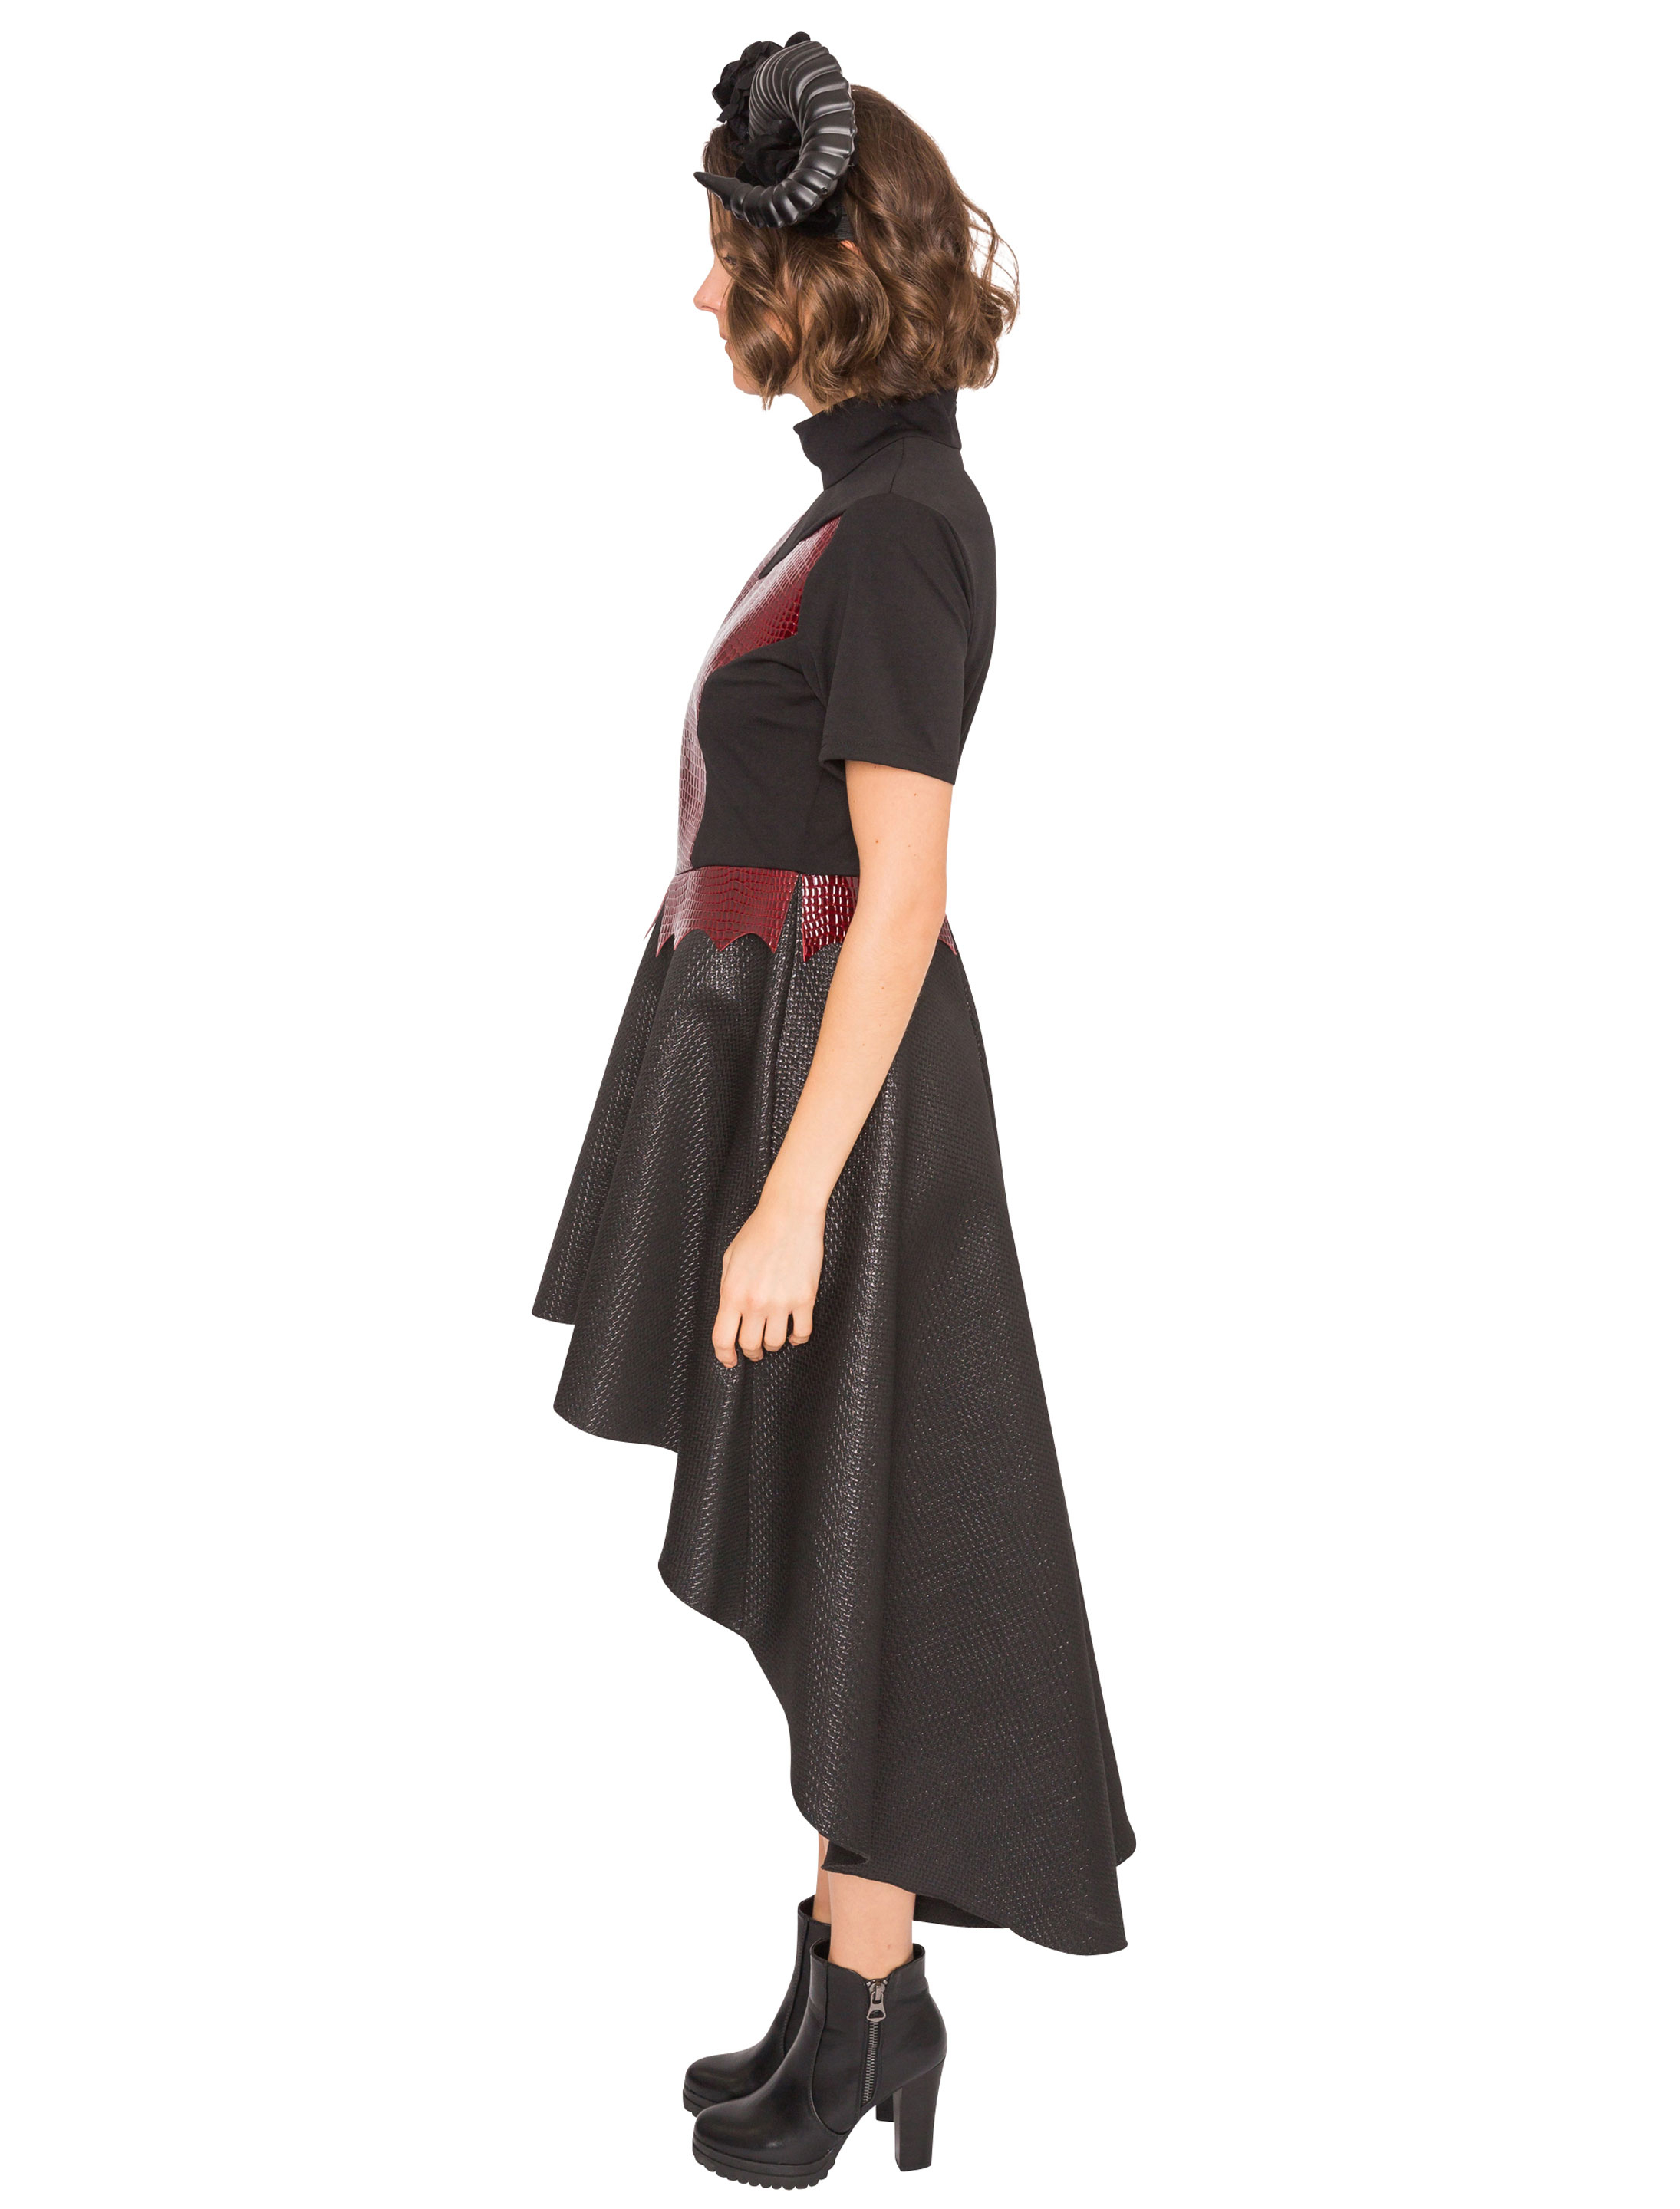 Kleid Teufel Damen schwarz/rot XL